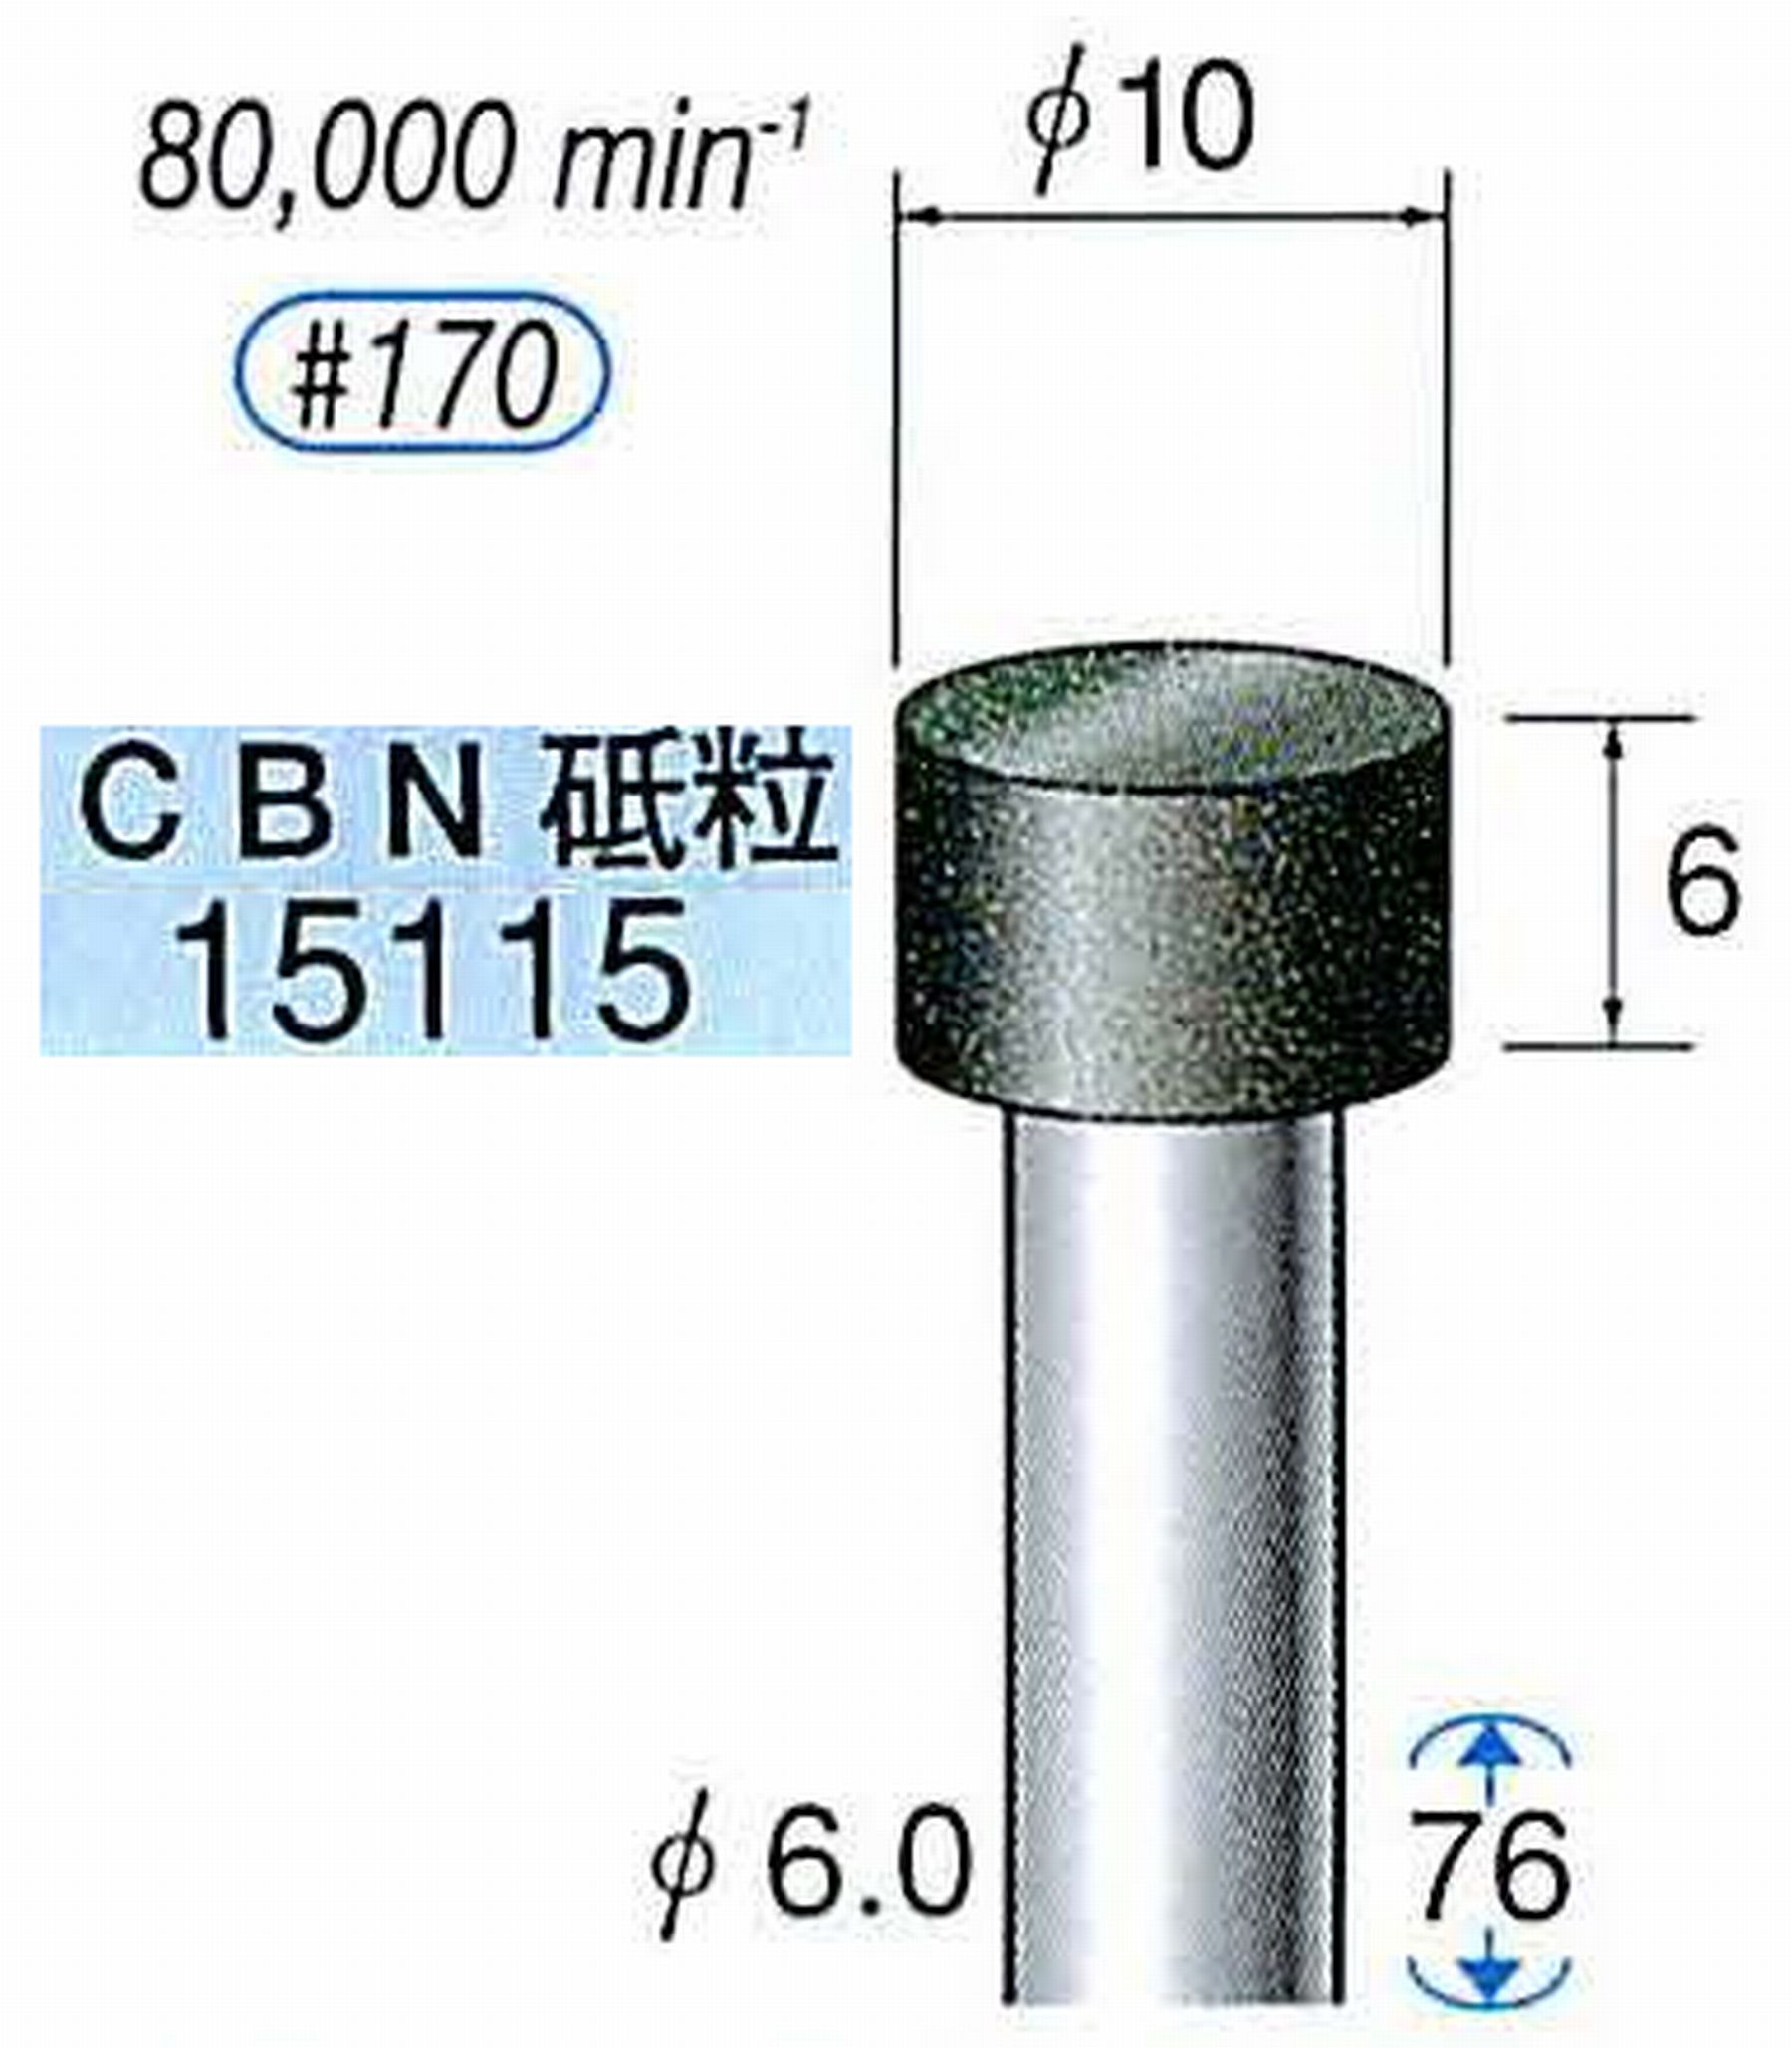 ナカニシ/NAKANISHI レジノイドダイヤモンド CBN砥粒 軸径(シャンク)φ6.0mm 15115